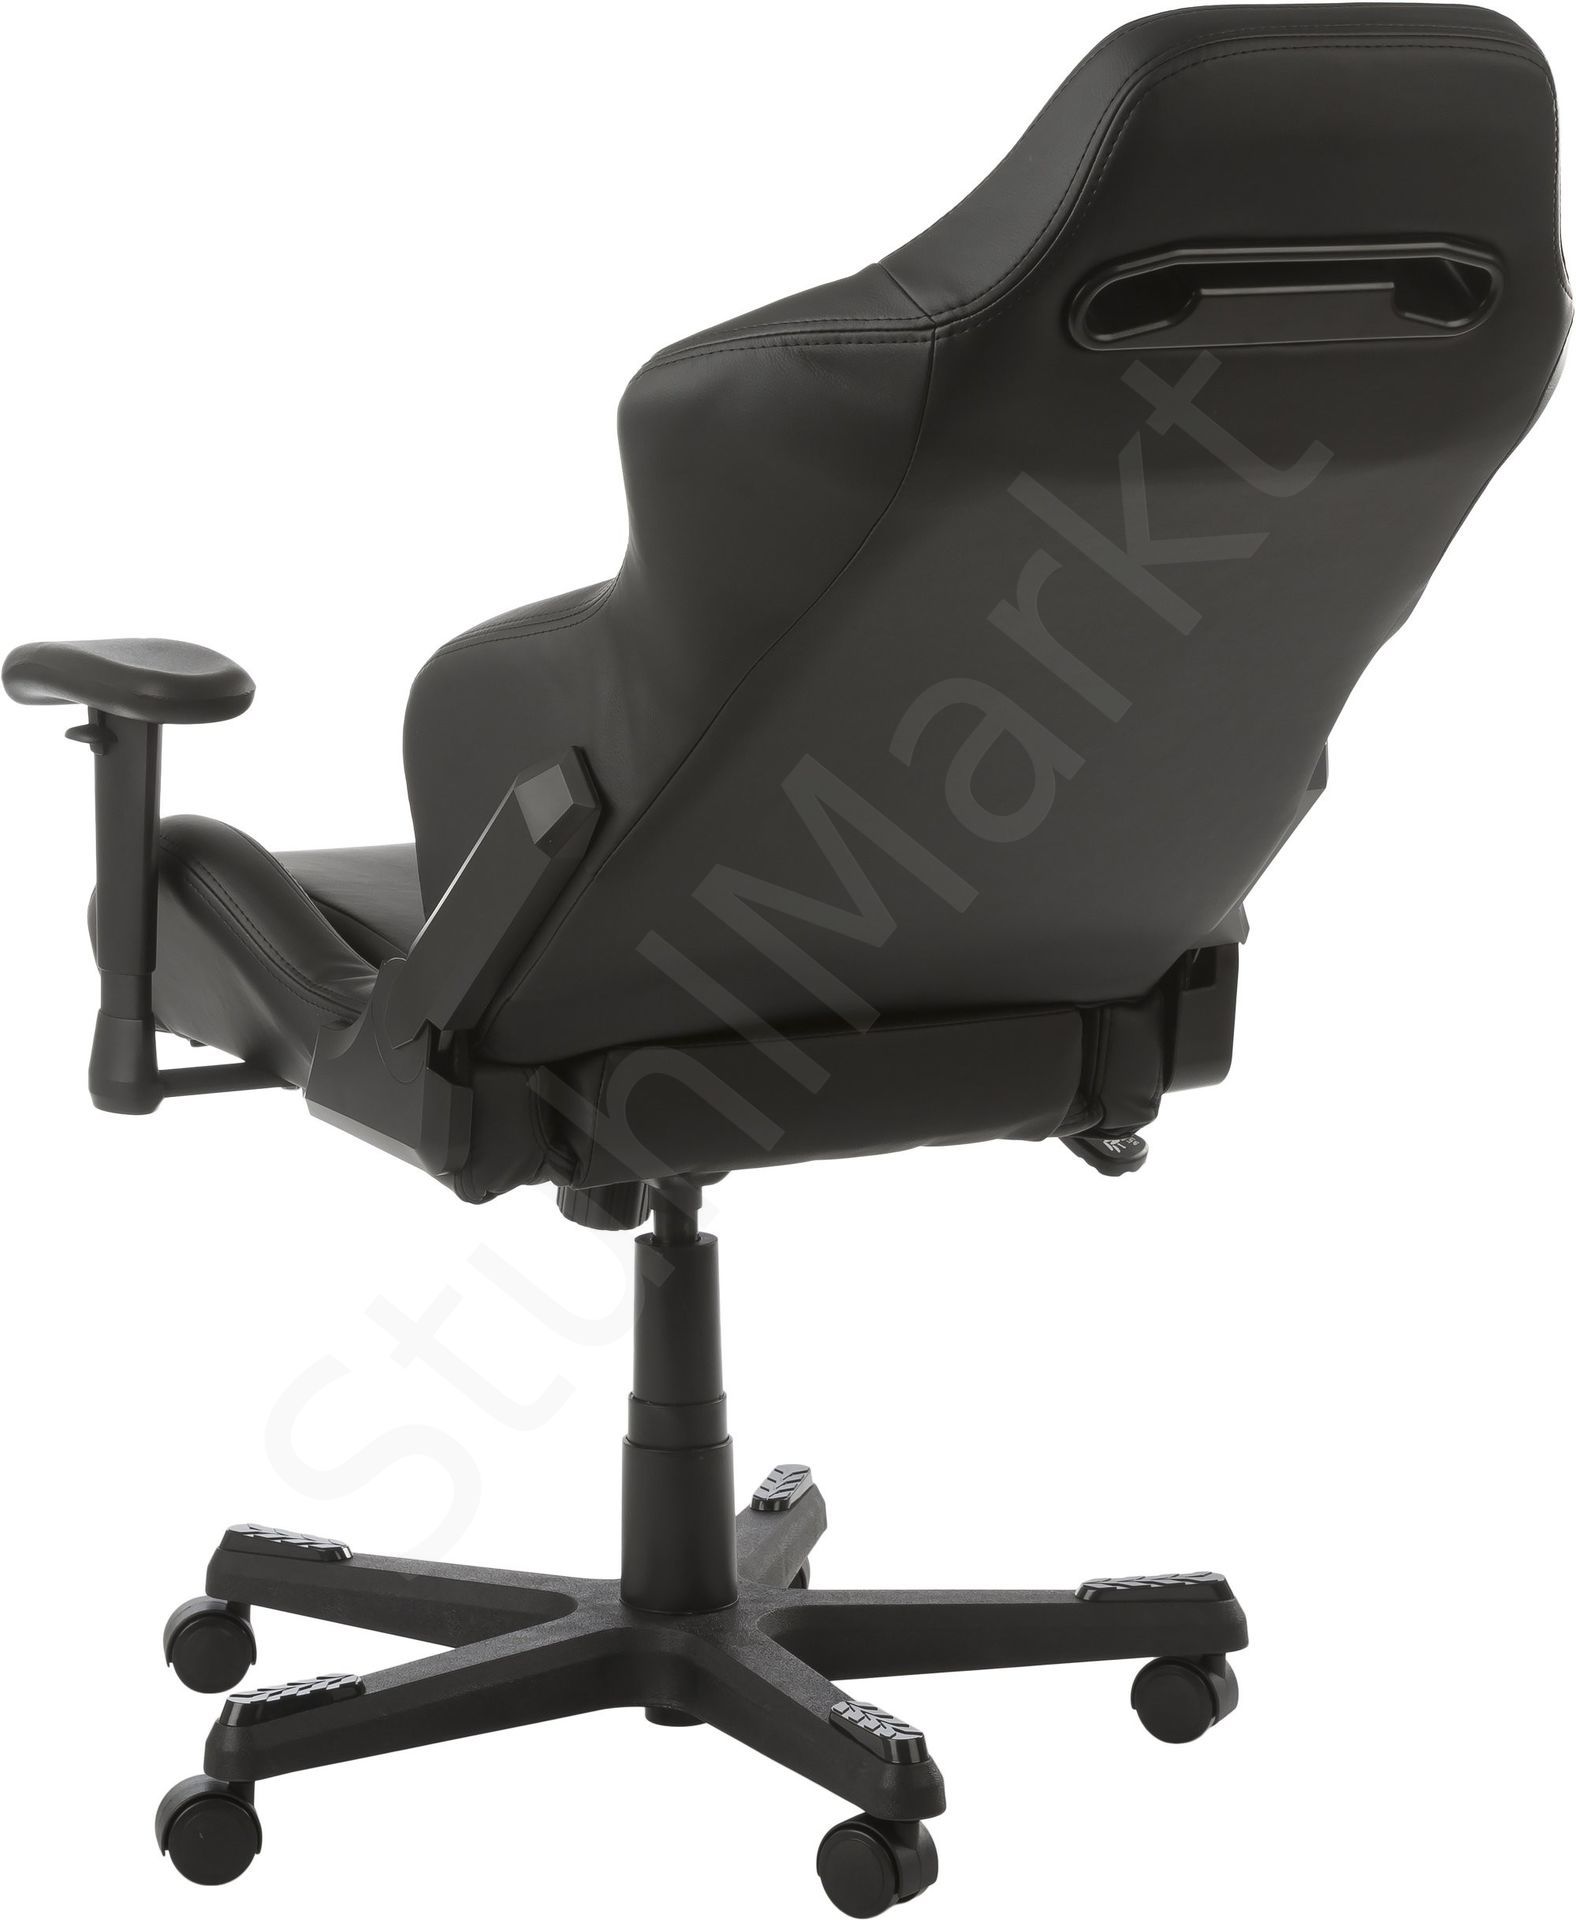  Компьютерное кресло DXRacer OH/DE03/N 6529